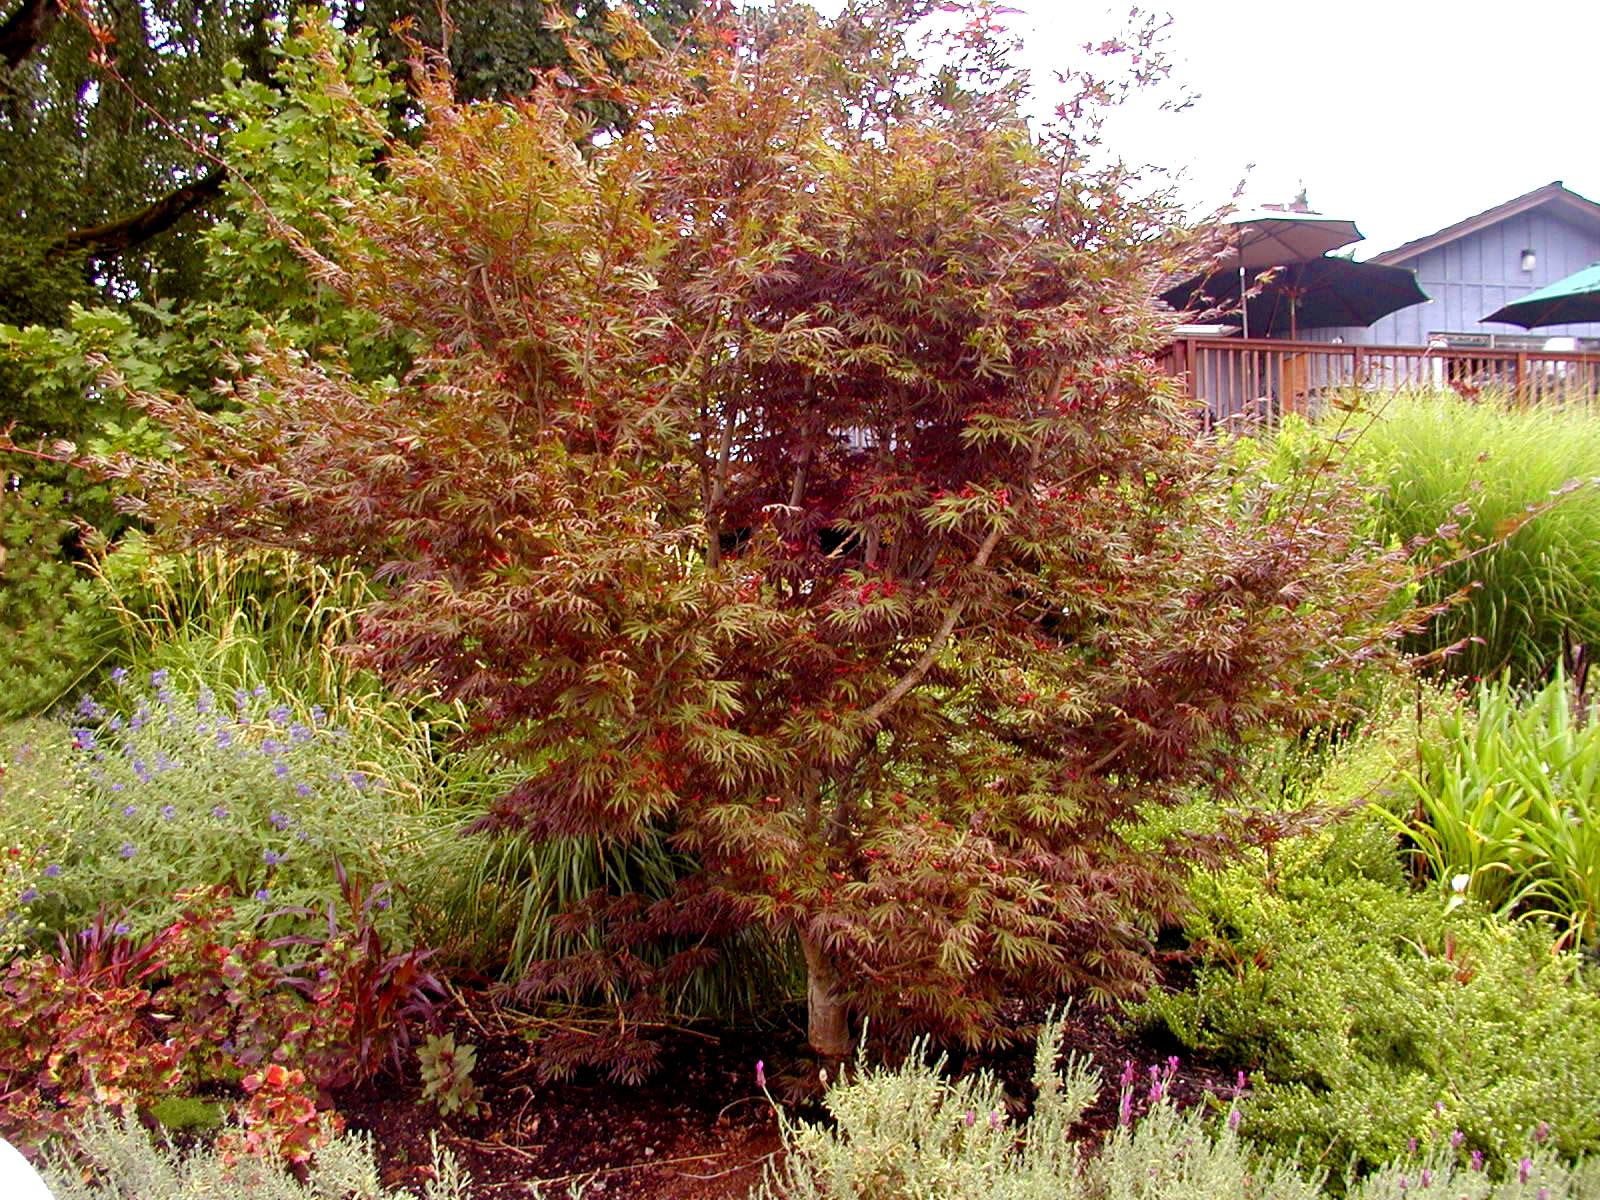 Acer palmatum 'Trompenburg'-Trompenburg Japanese Maple